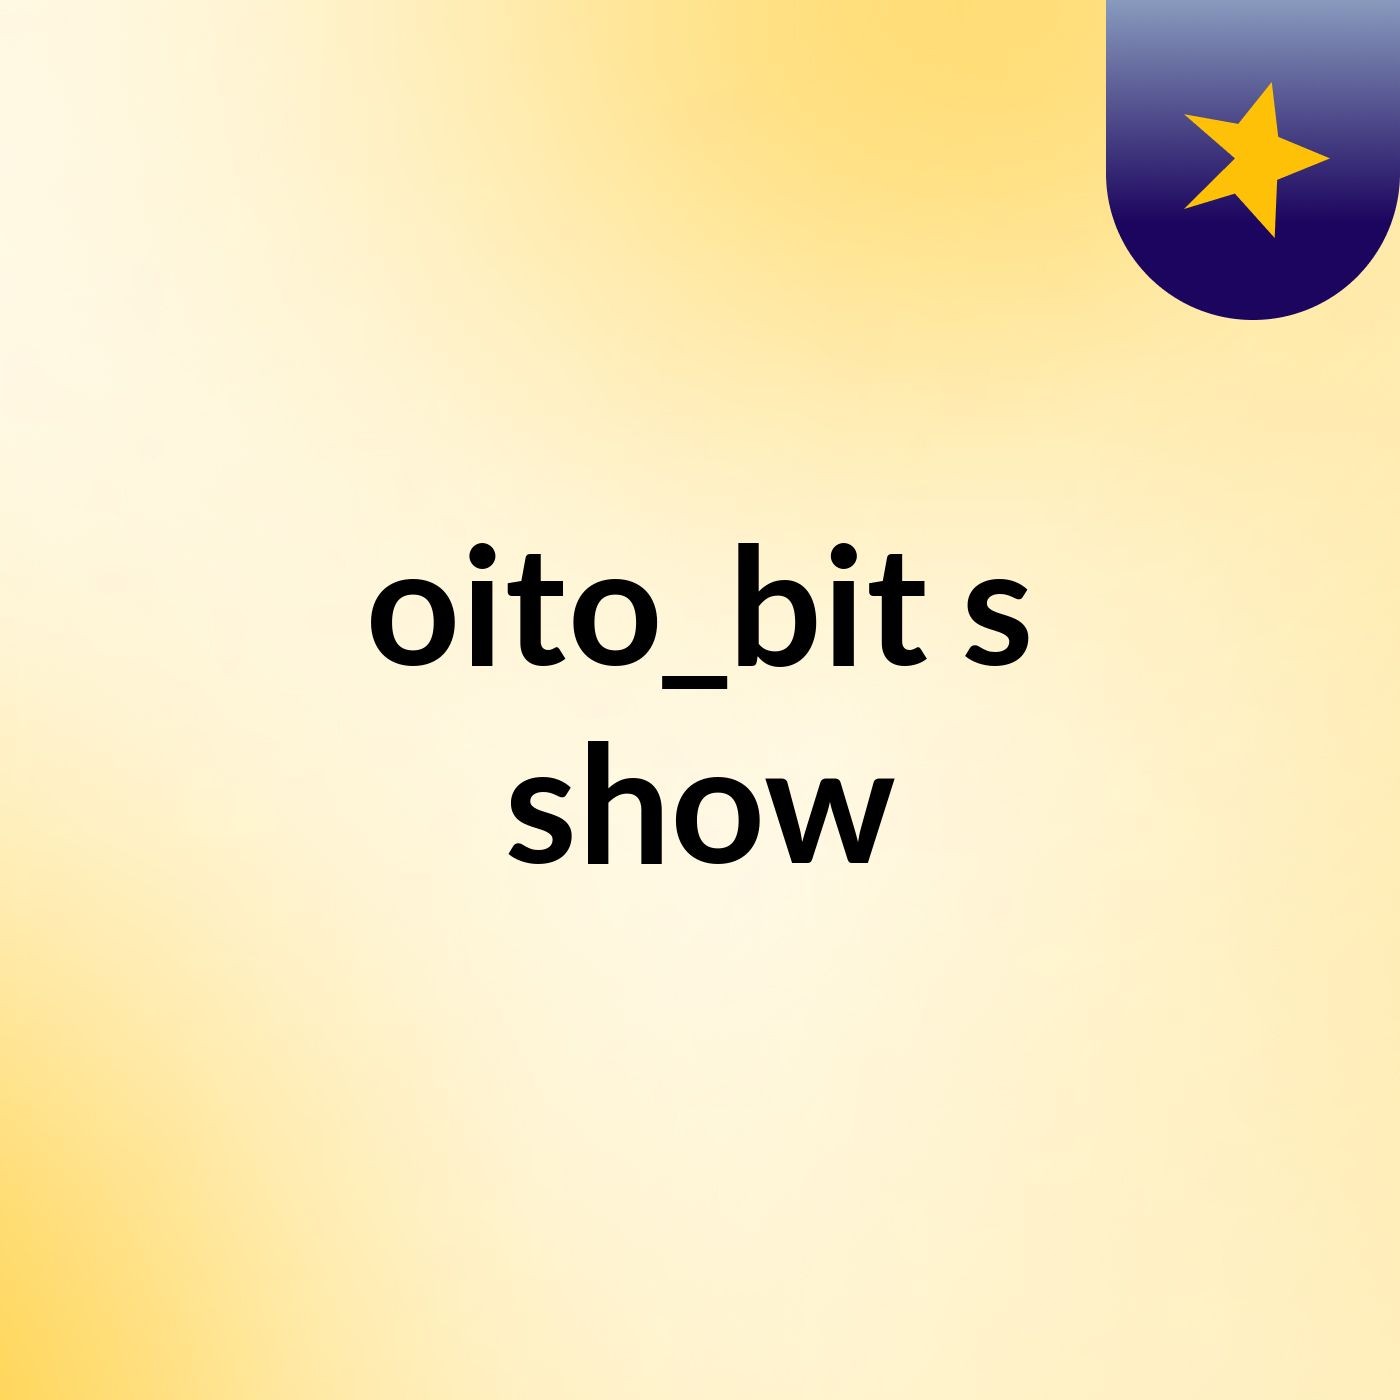 oito_bit's show